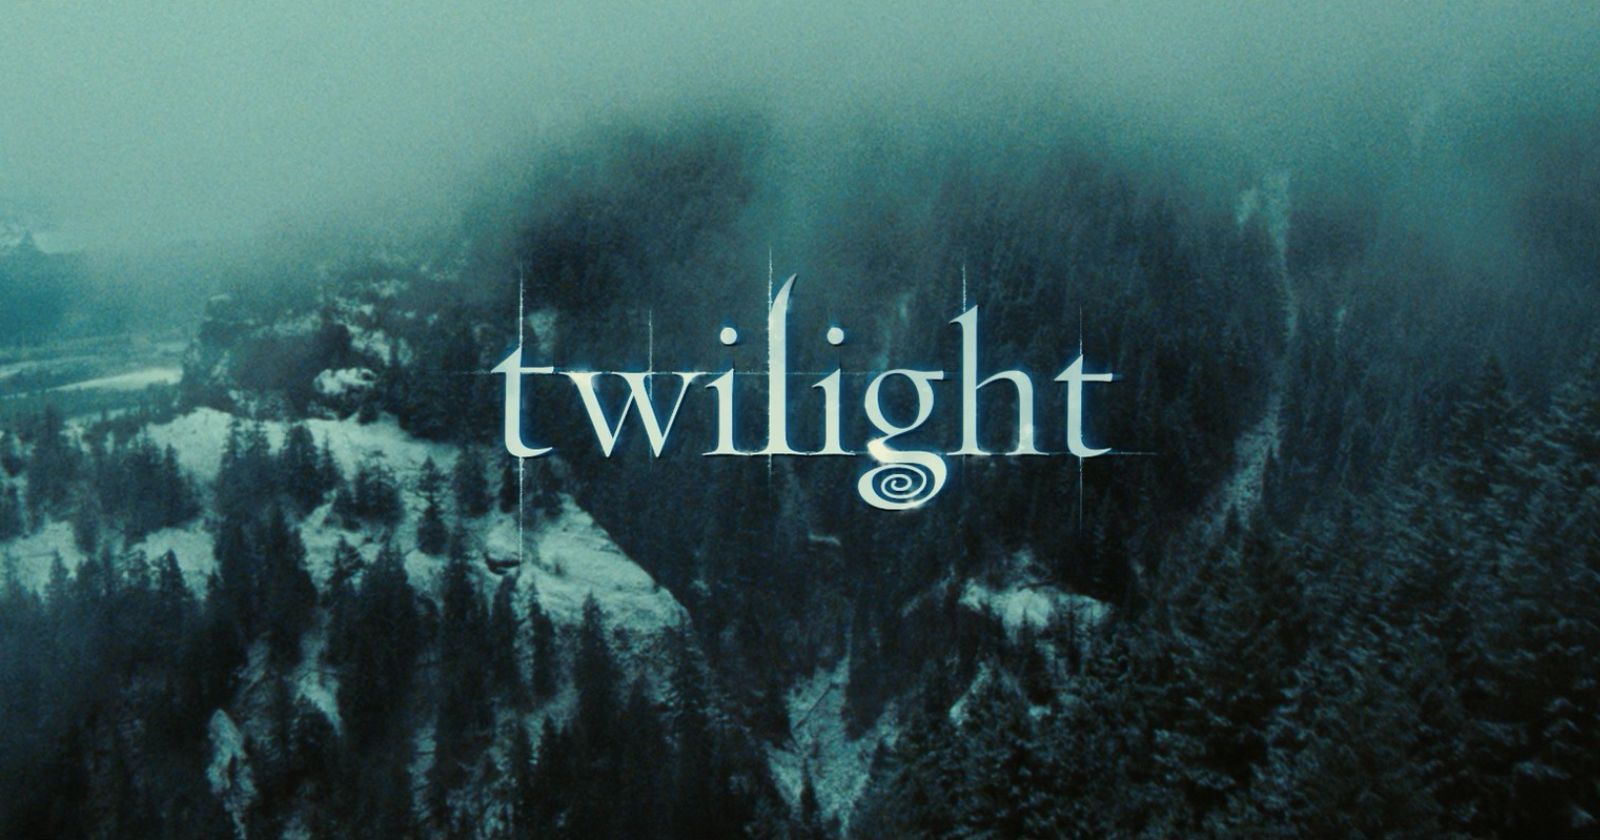 Where Was Twilight Filmed